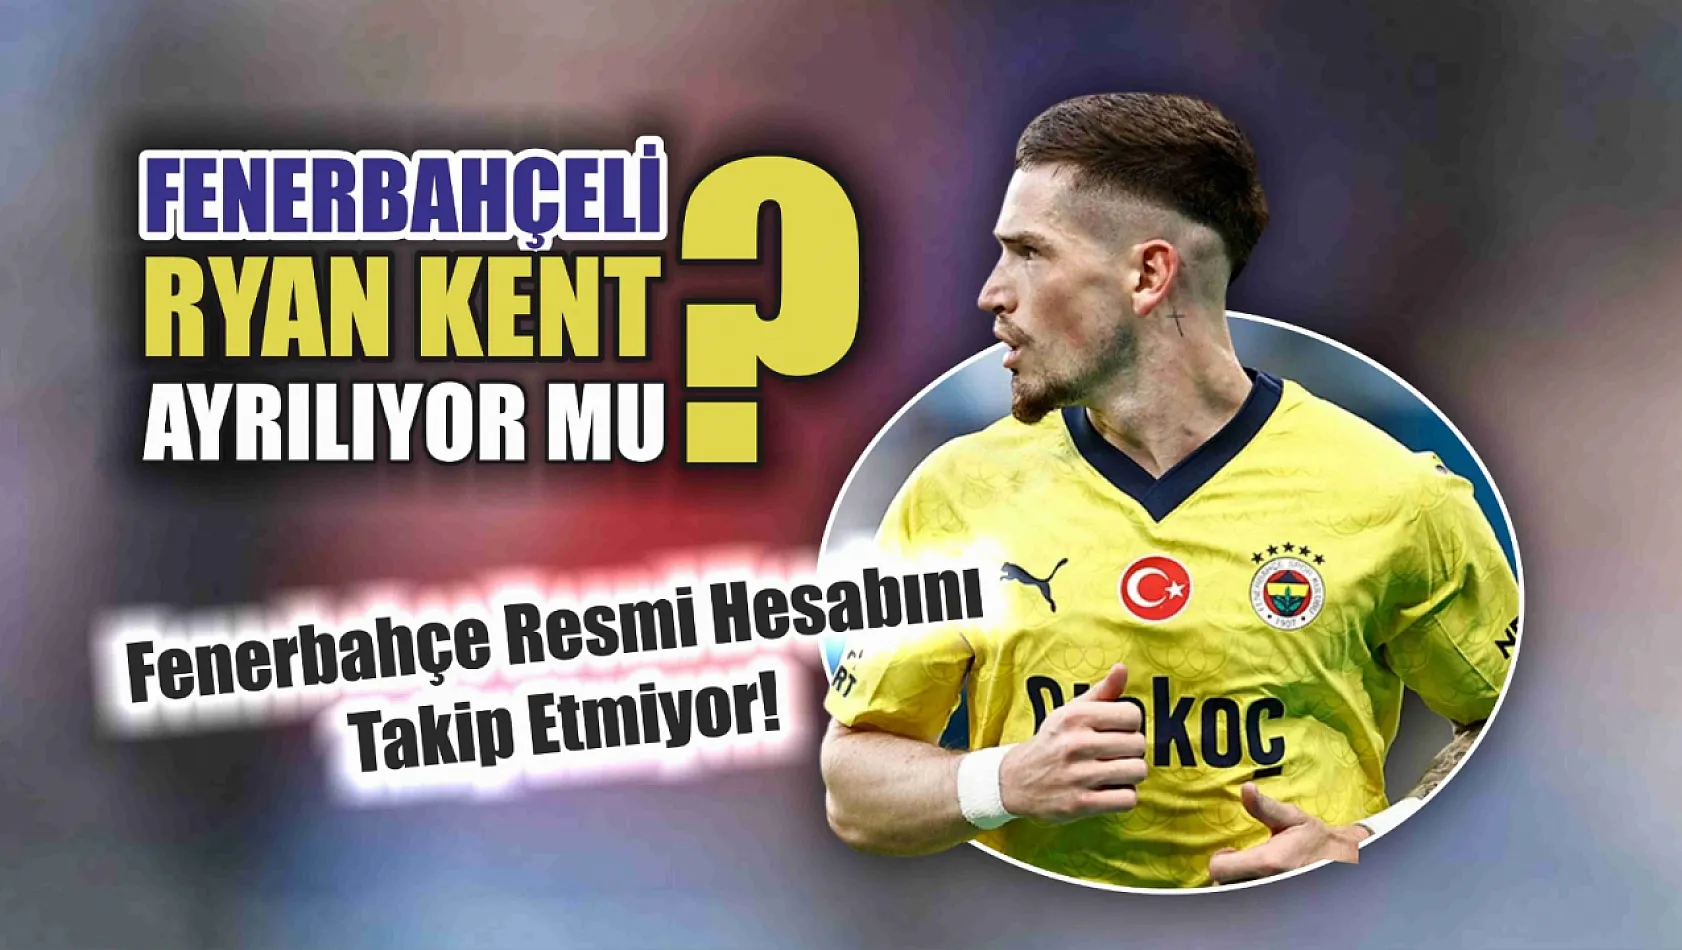 Fenerbahçeli yıldız isim Ryan Kent ayrılıyor mu? Fenerbahçe resmi hesabını takip etmiyor! Fotoğraf paylaşımı dahi yapmadı!